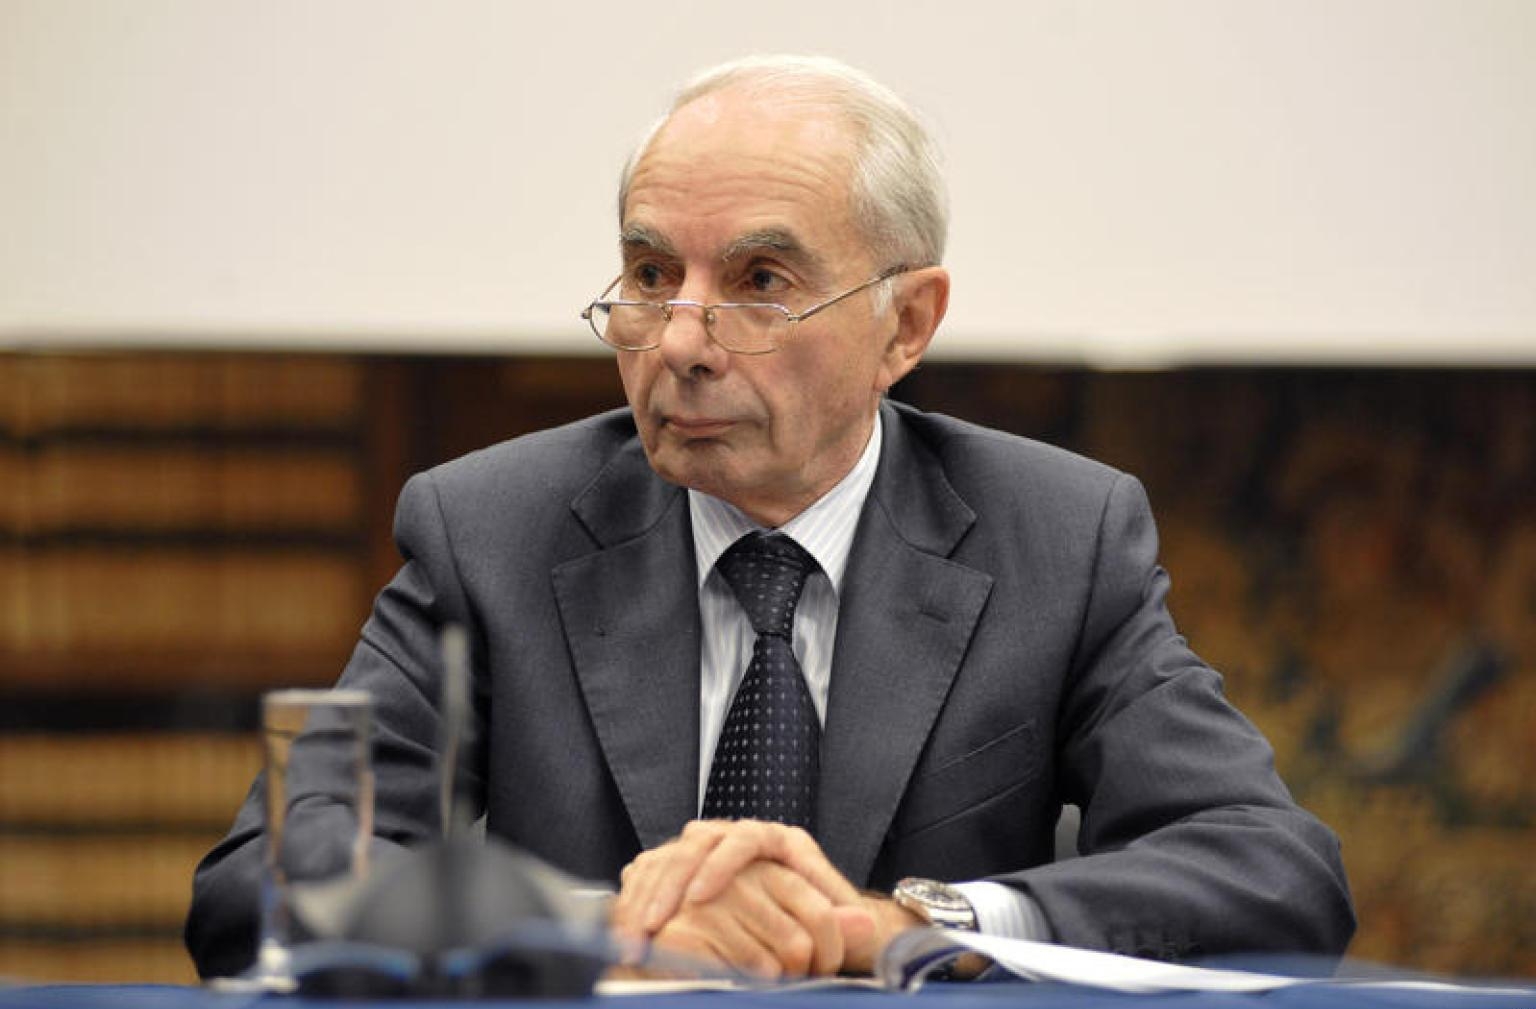 Джулиано Амато 77-й Председатель Совета министров Италии